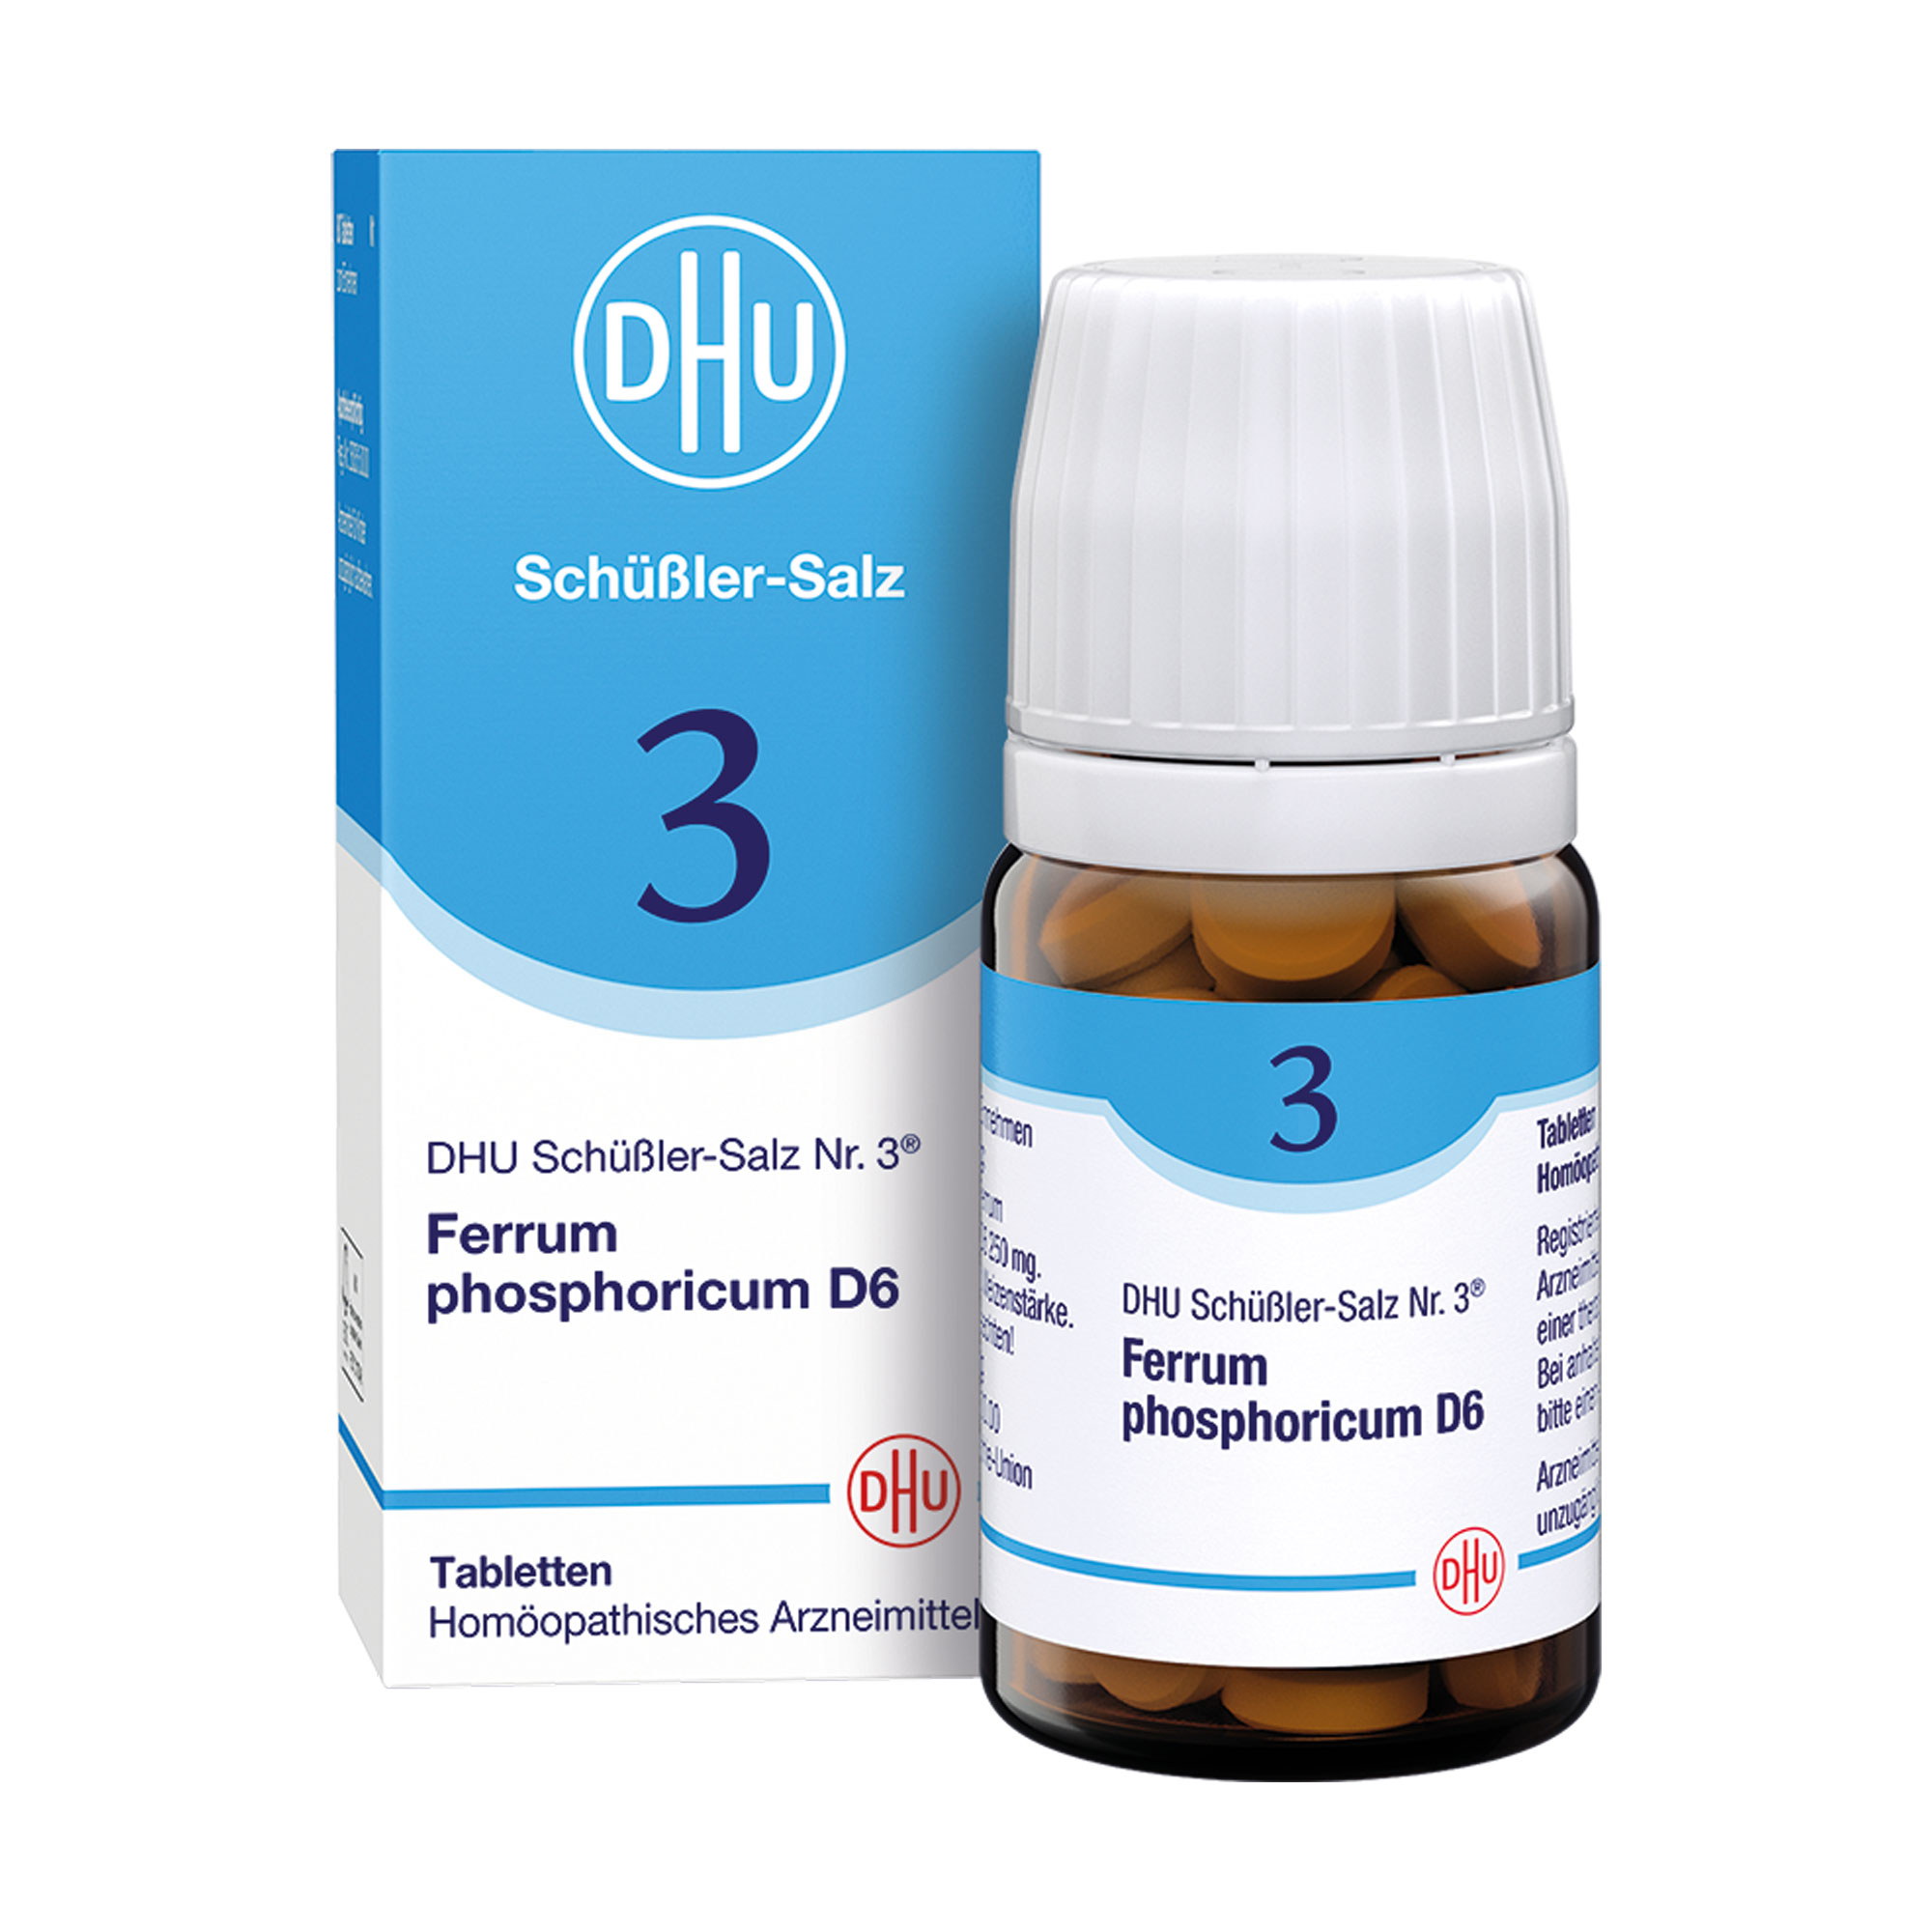 Homöopathisches Arzneimittel mit Ferrum phosphoricum Trit. D6.